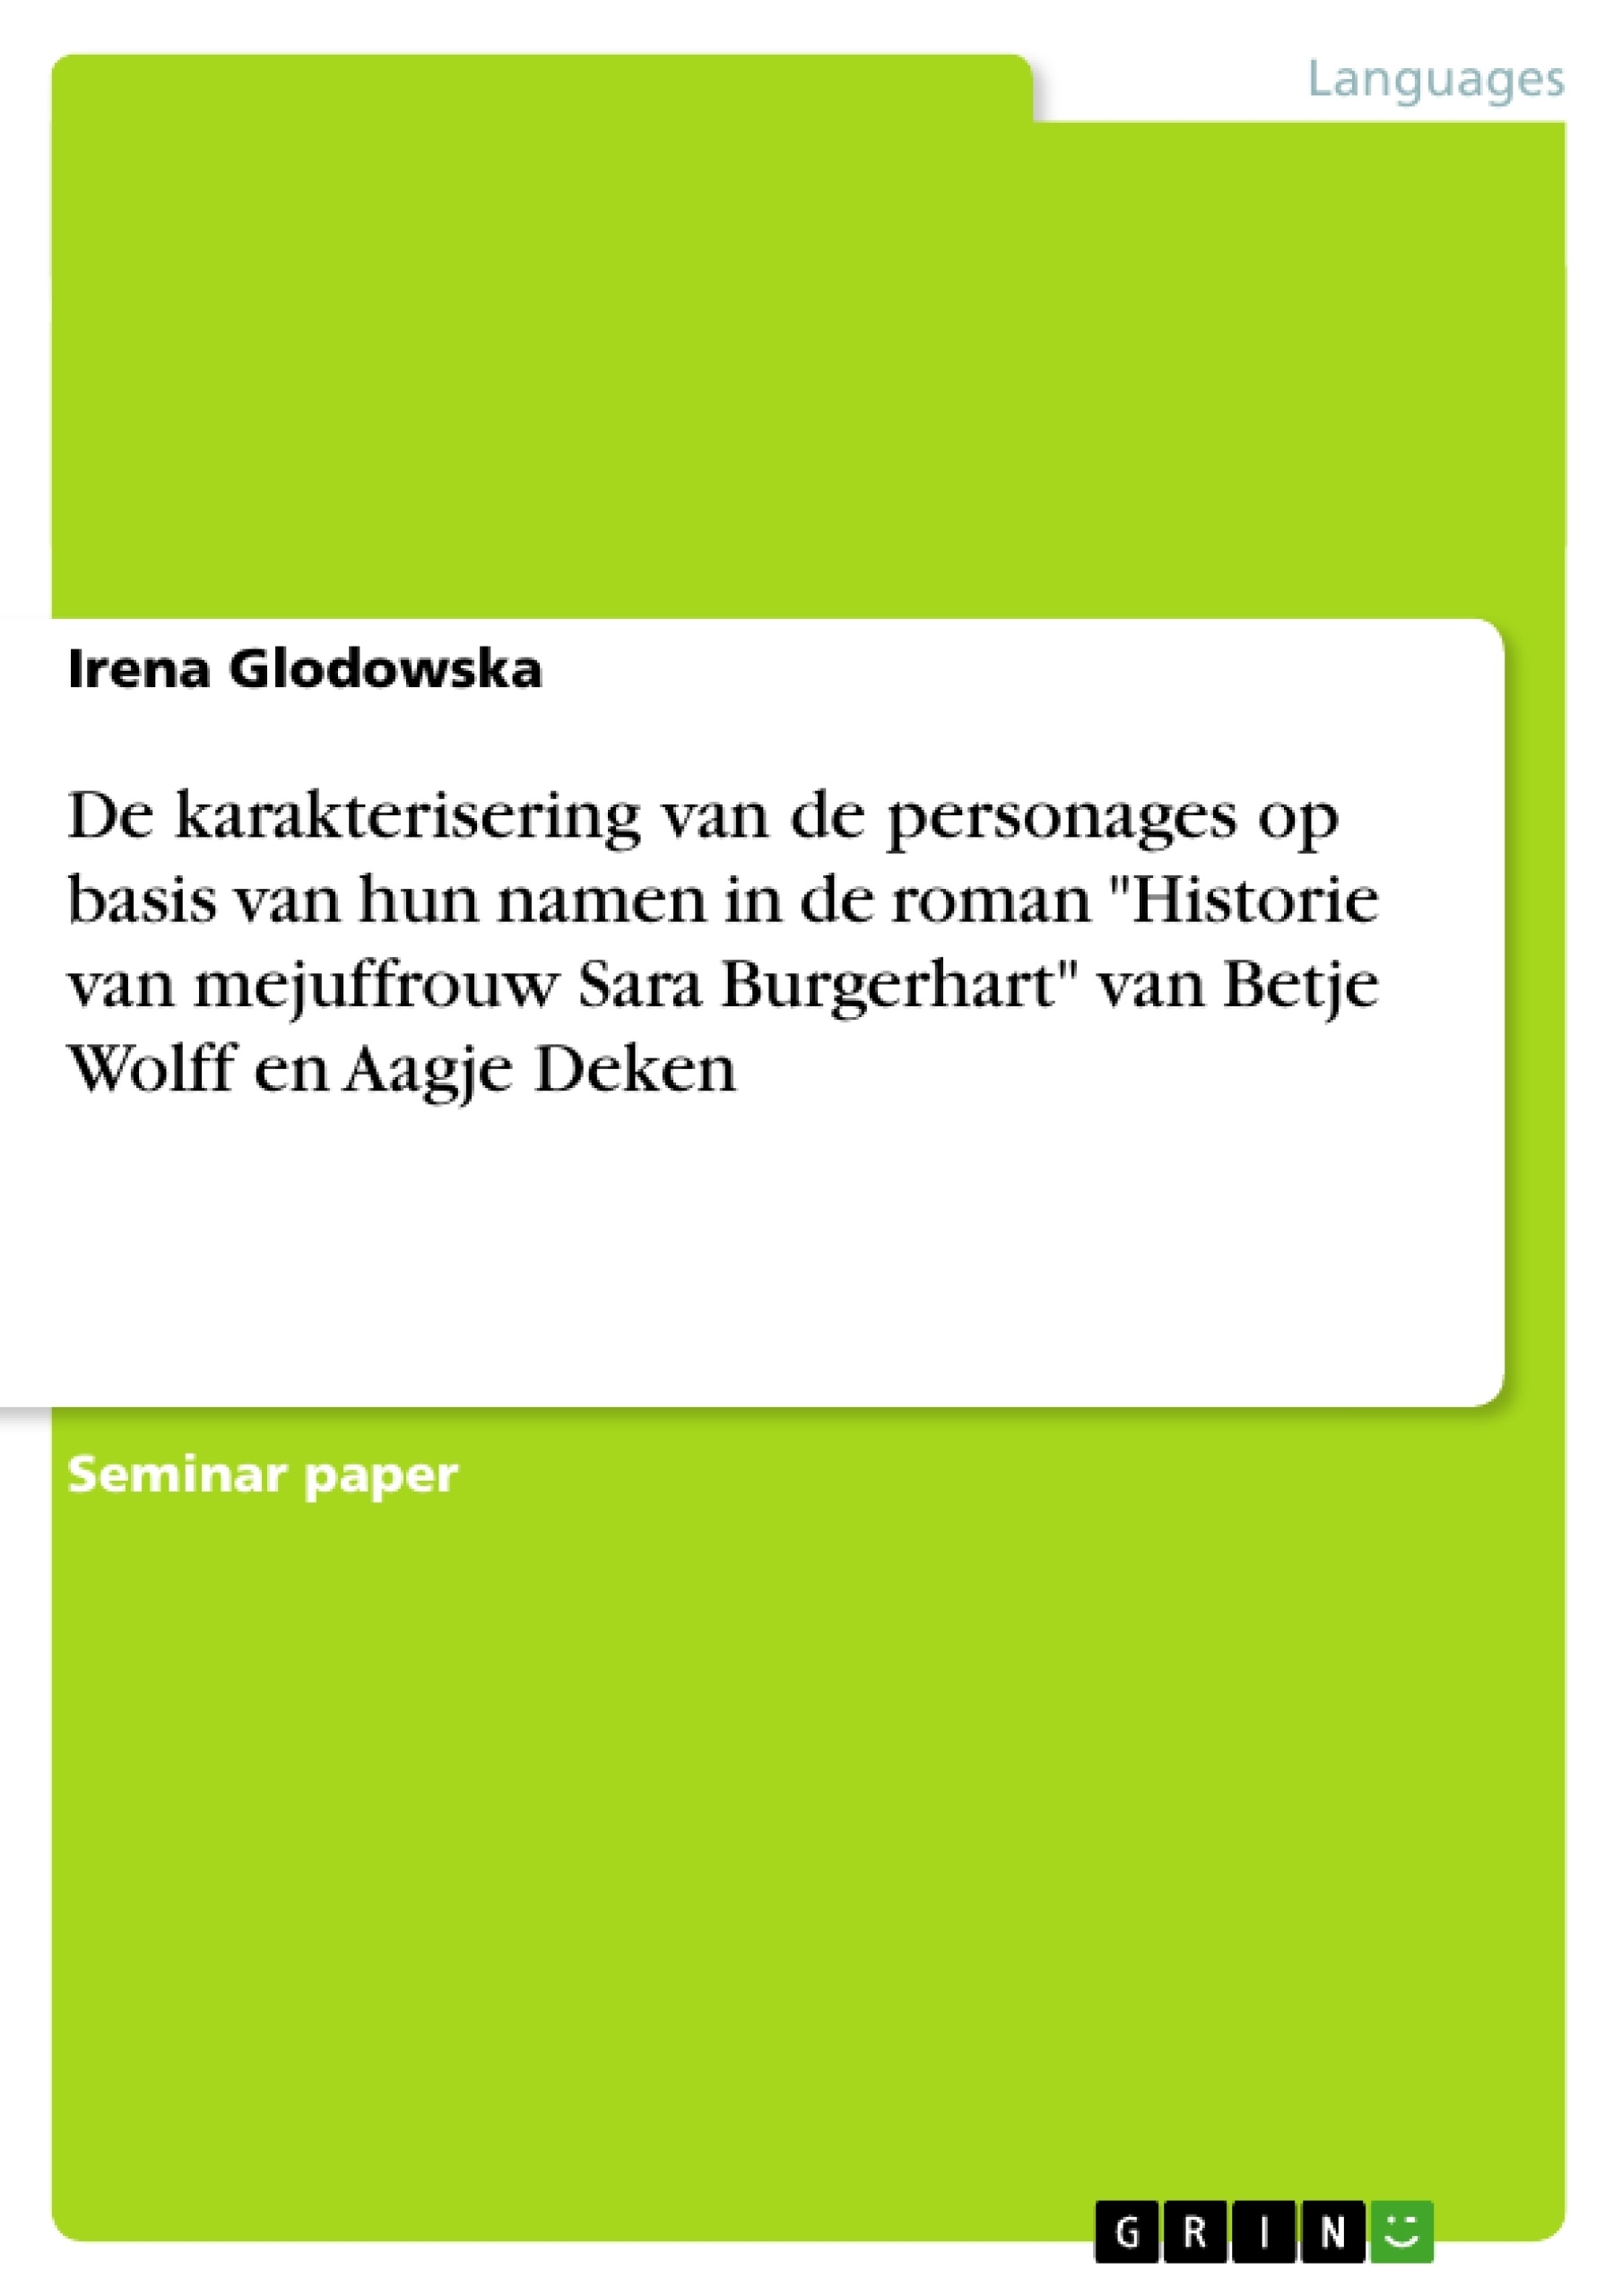 Título: De karakterisering van de personages op basis van hun namen in de roman "Historie van mejuffrouw Sara Burgerhart" van Betje Wolff en Aagje Deken